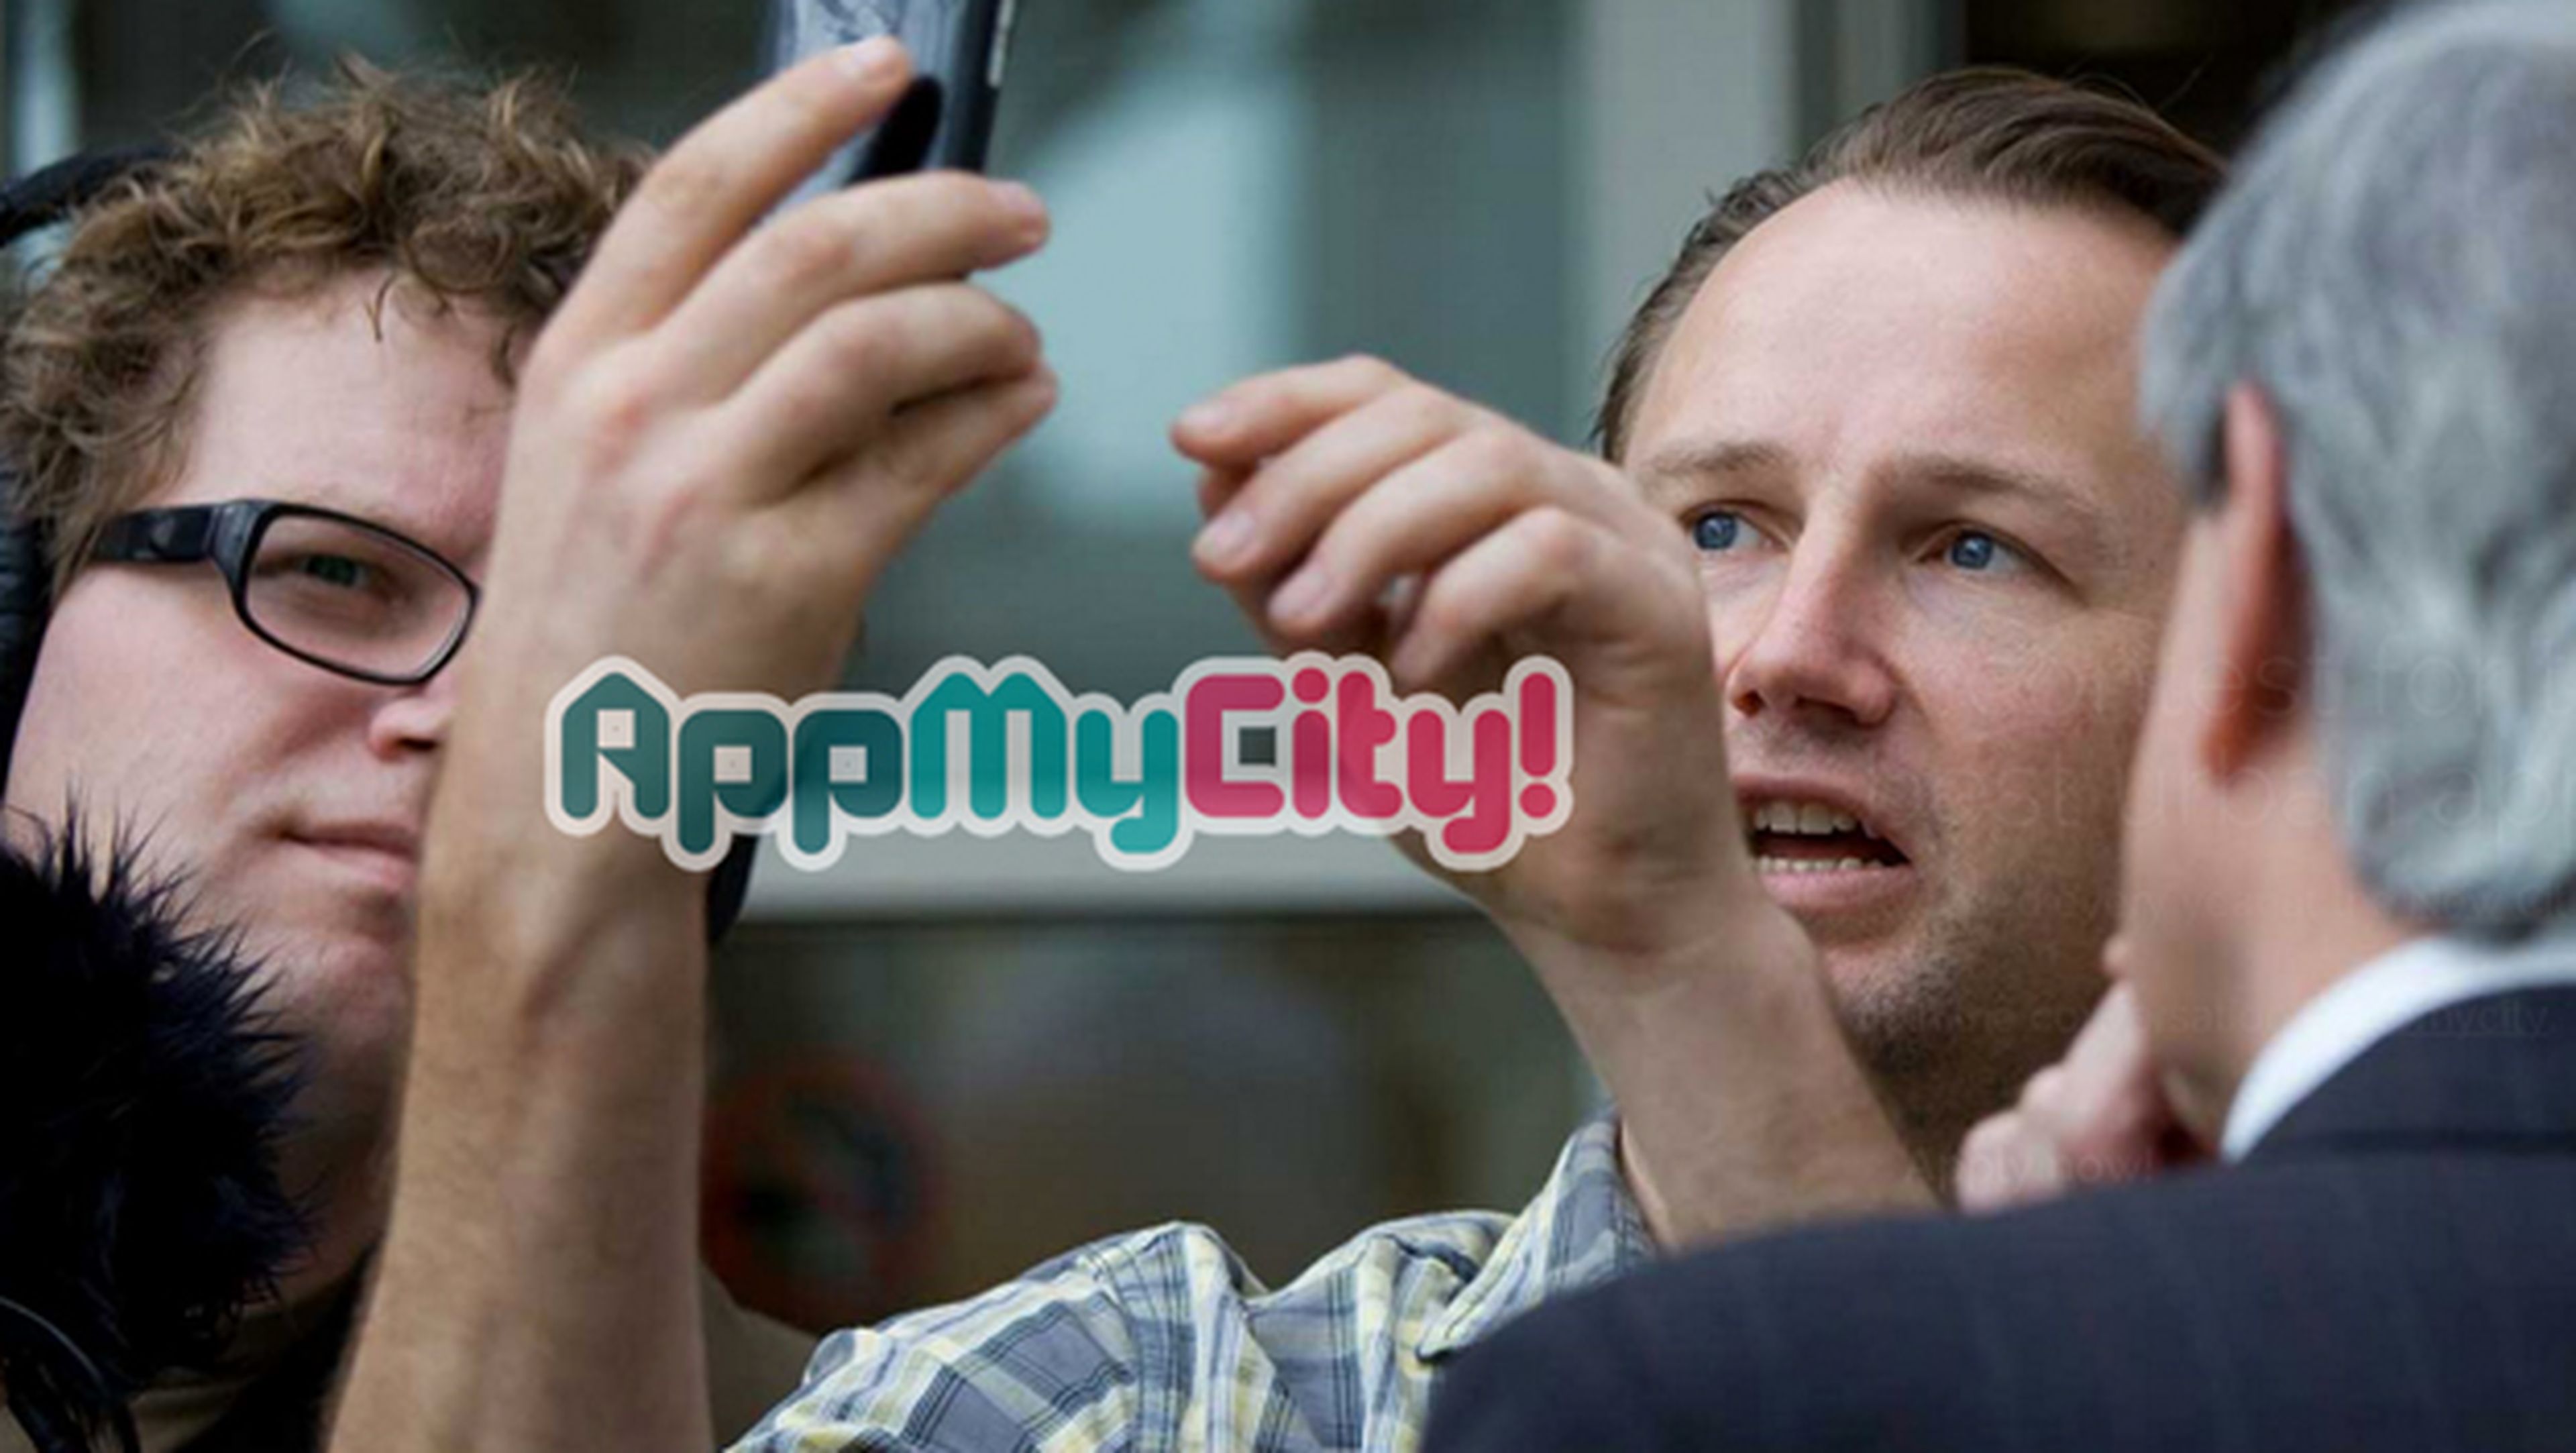 El concurso AppMyCity